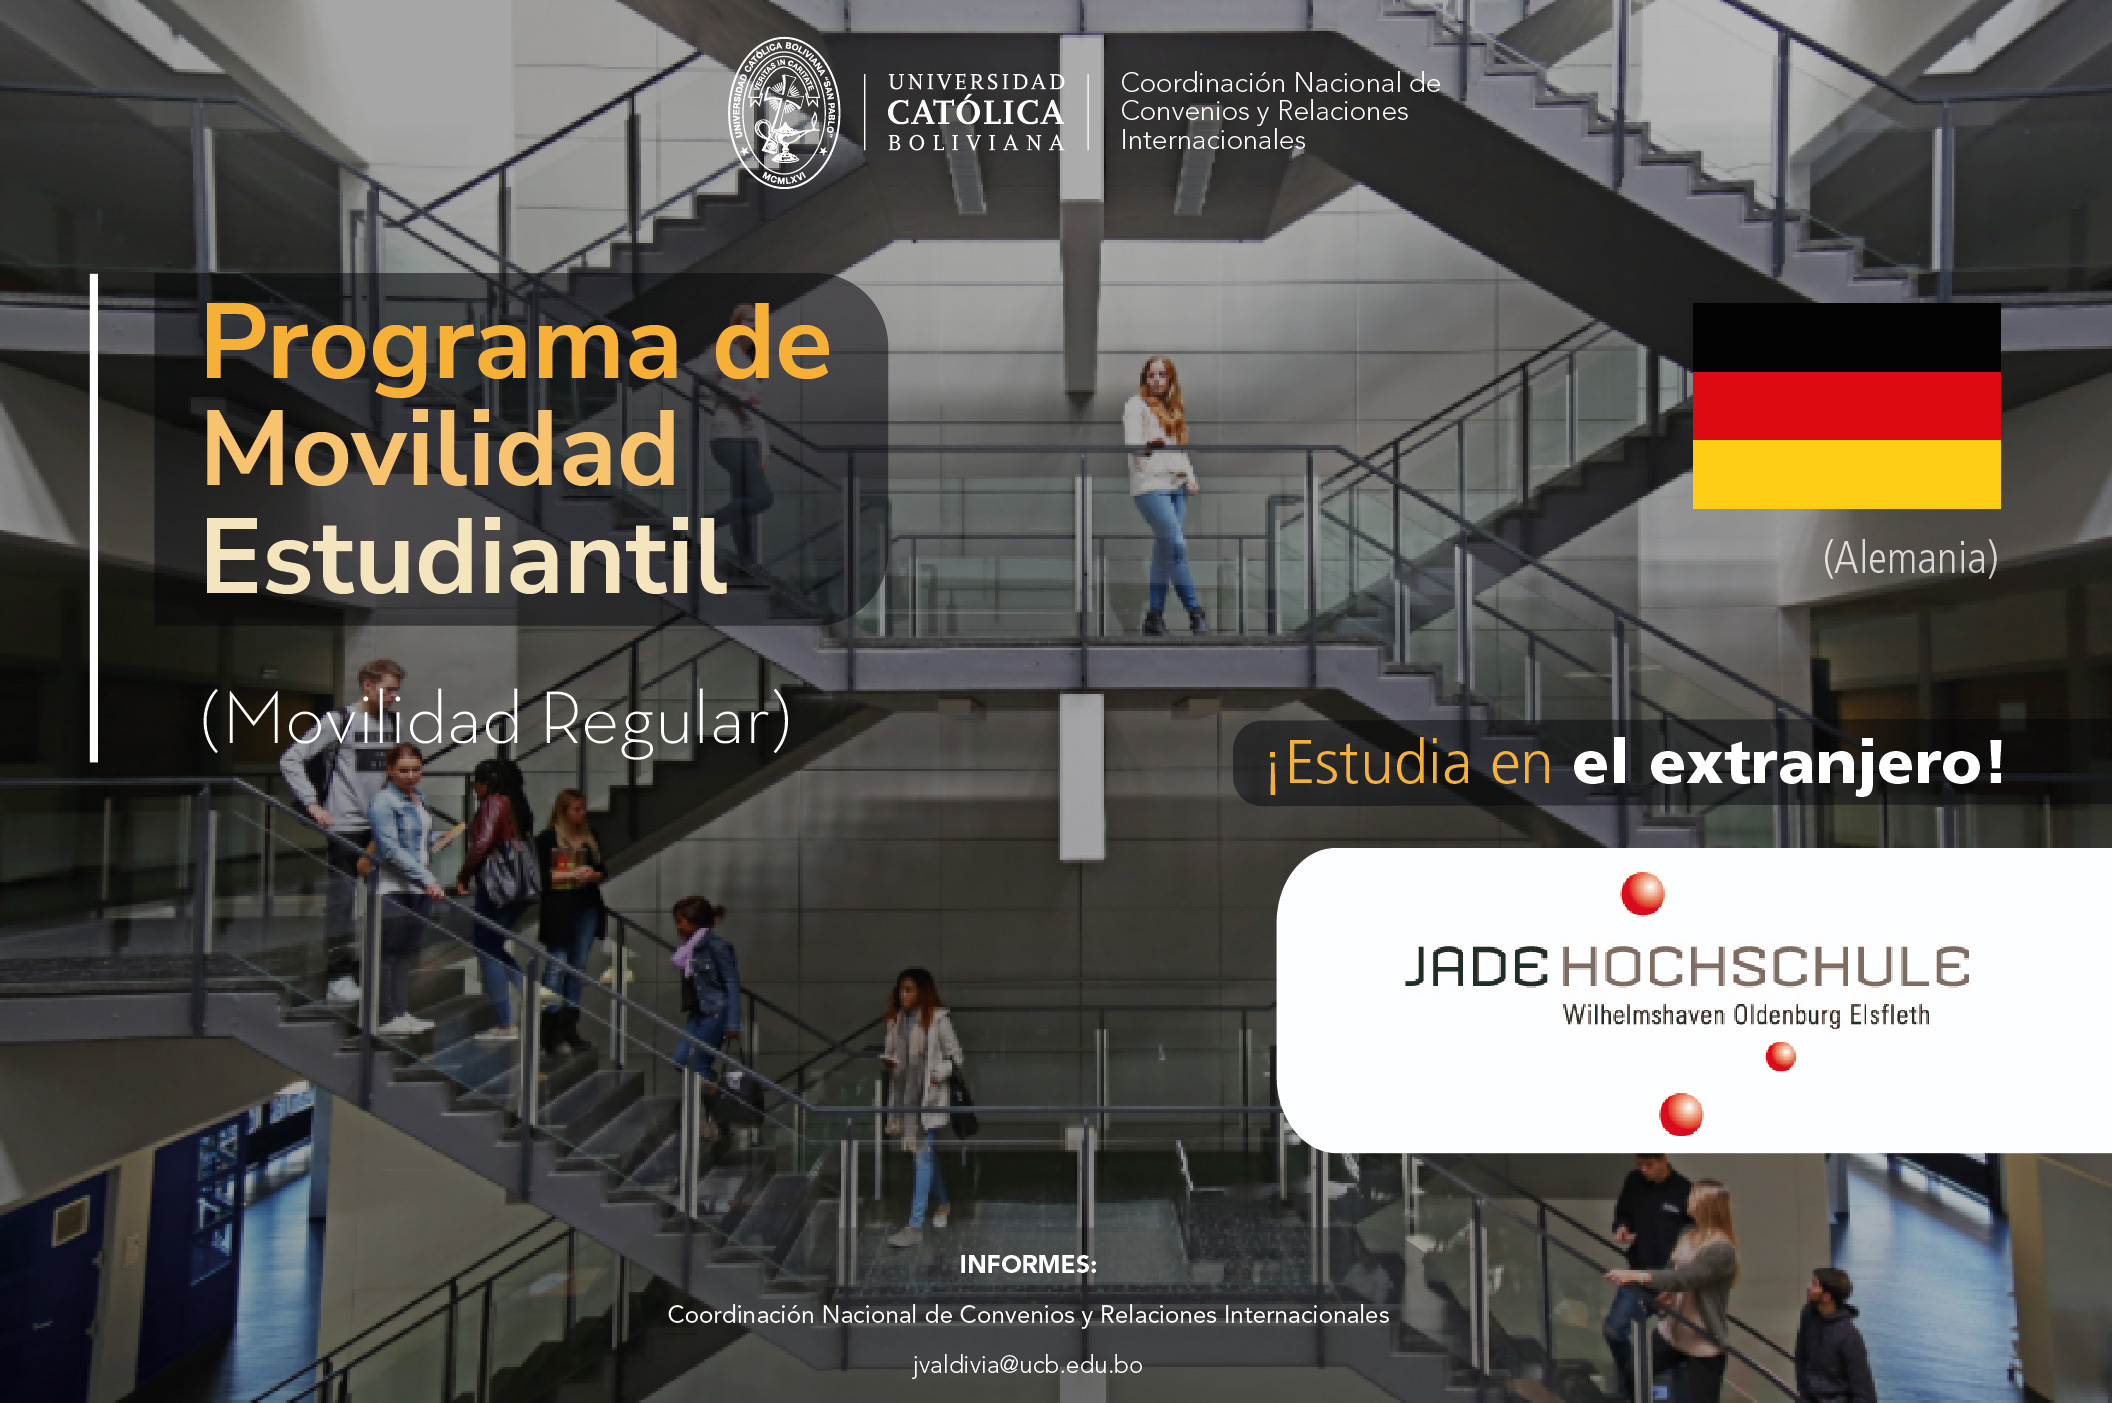 ¡El Programa de Movilidad Estudiantil UCB por el Mundo está con la convocatoria abierta para el 1-2024! La Universidad de Jade en Alemania. se encuentra disponible en la convocatoria bajo el programa de Movilidad Regular. Revisa la convocatoria para mayor información.